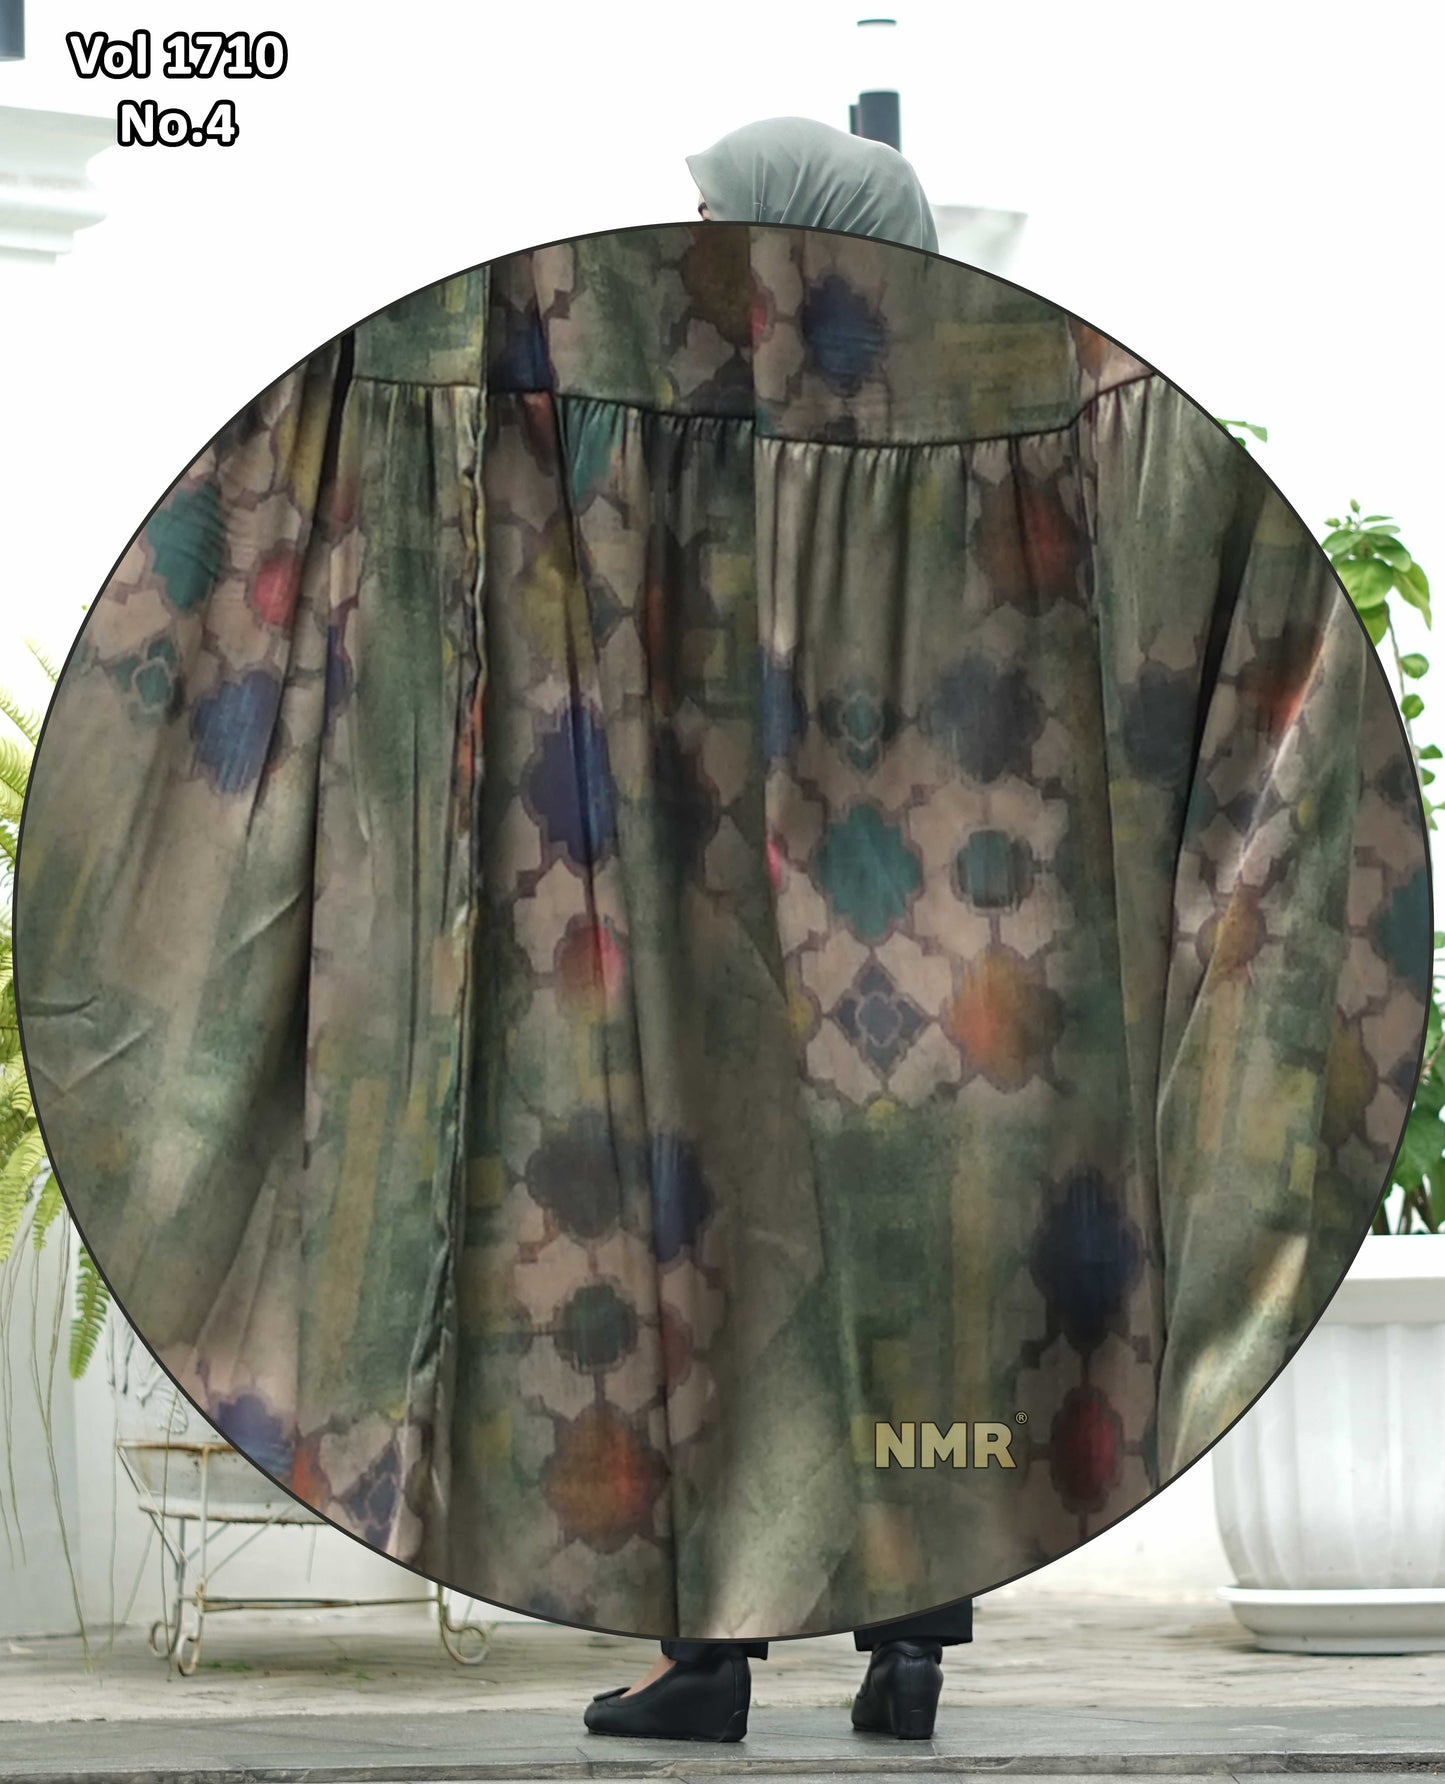 NMR Midi Dress Armany Silk Vol 1710-4